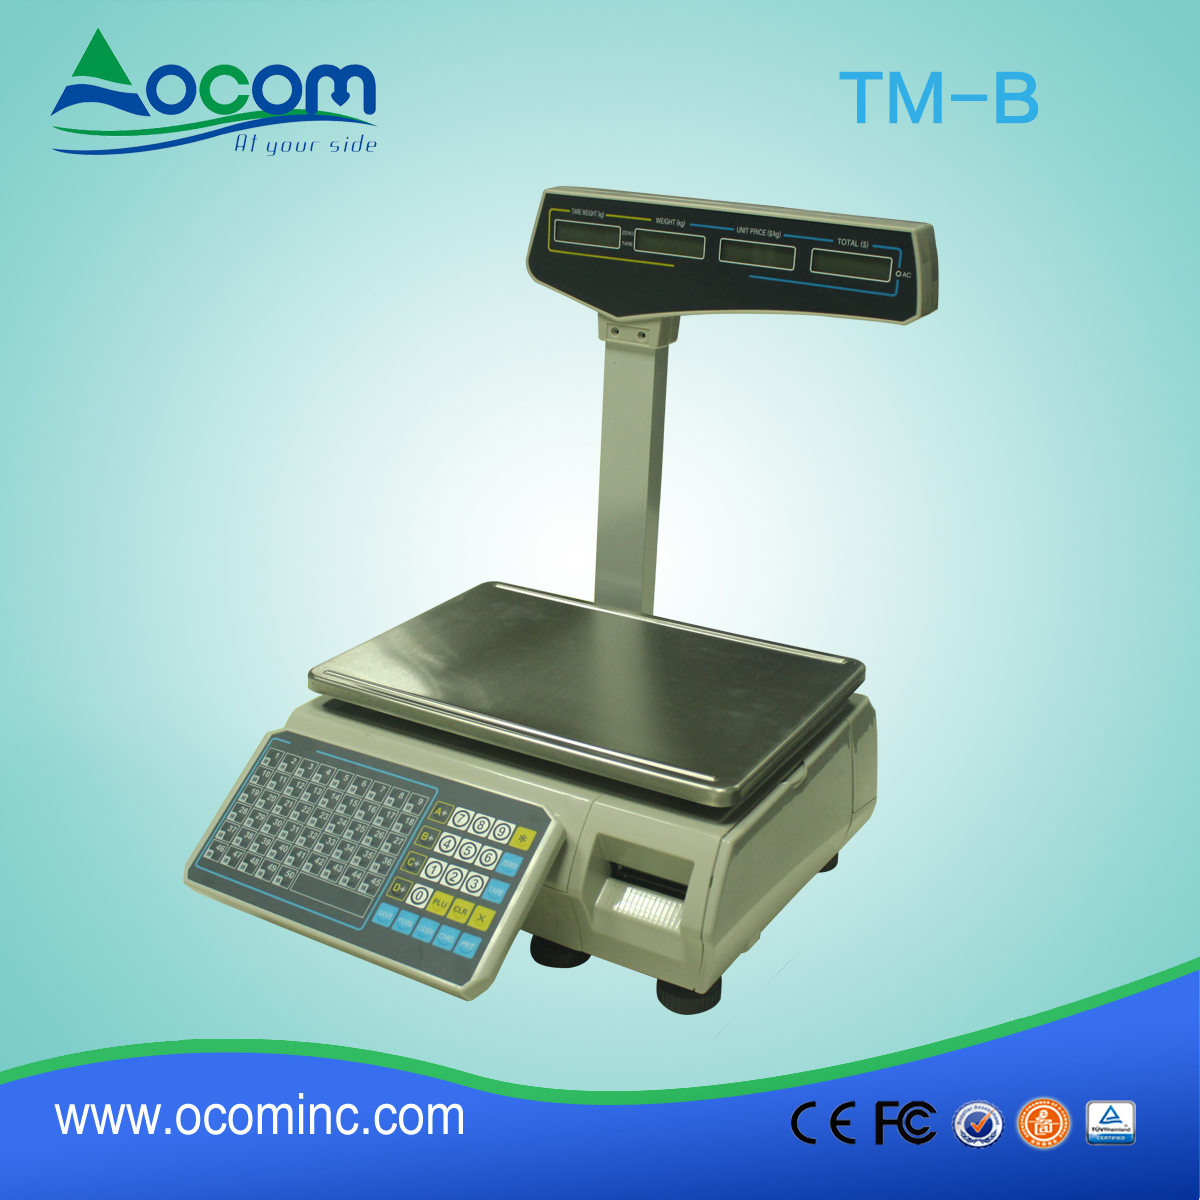 (TM-B) Chiny wykonane skali drukowania niskich kosztach termiczne kodów kreskowych